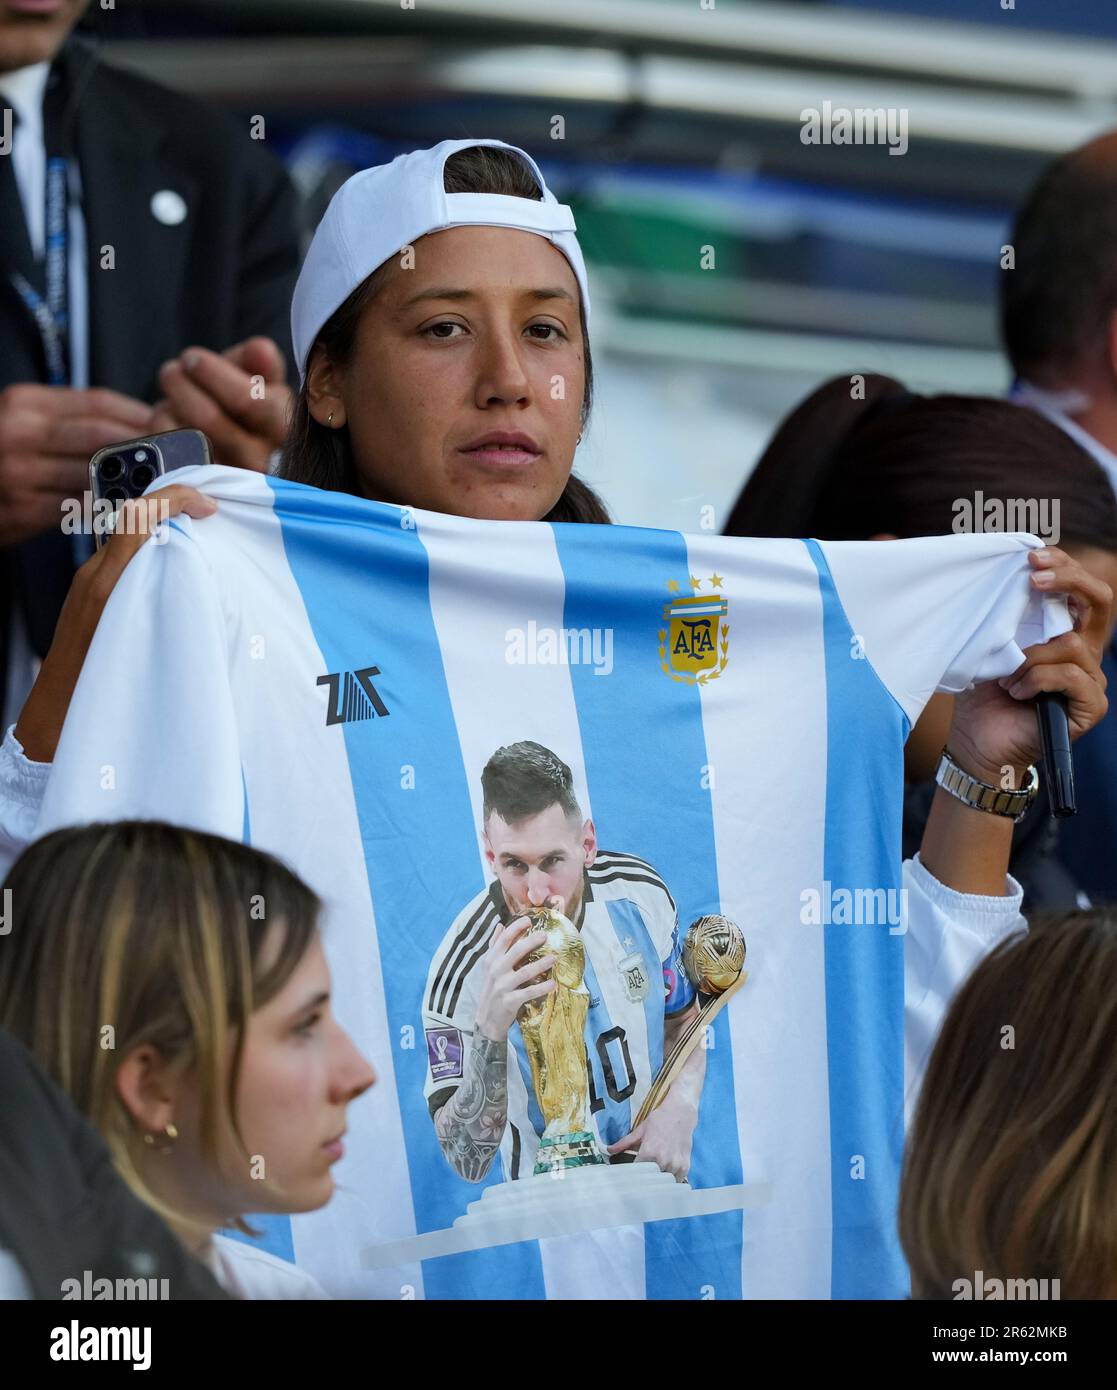 Un supporters affiche un match préliminaire de la coupe du monde Argentina Lionel Messi lors du match de la Ligue 1 entre Paris Saint Germain et Clermont foot au pair Banque D'Images